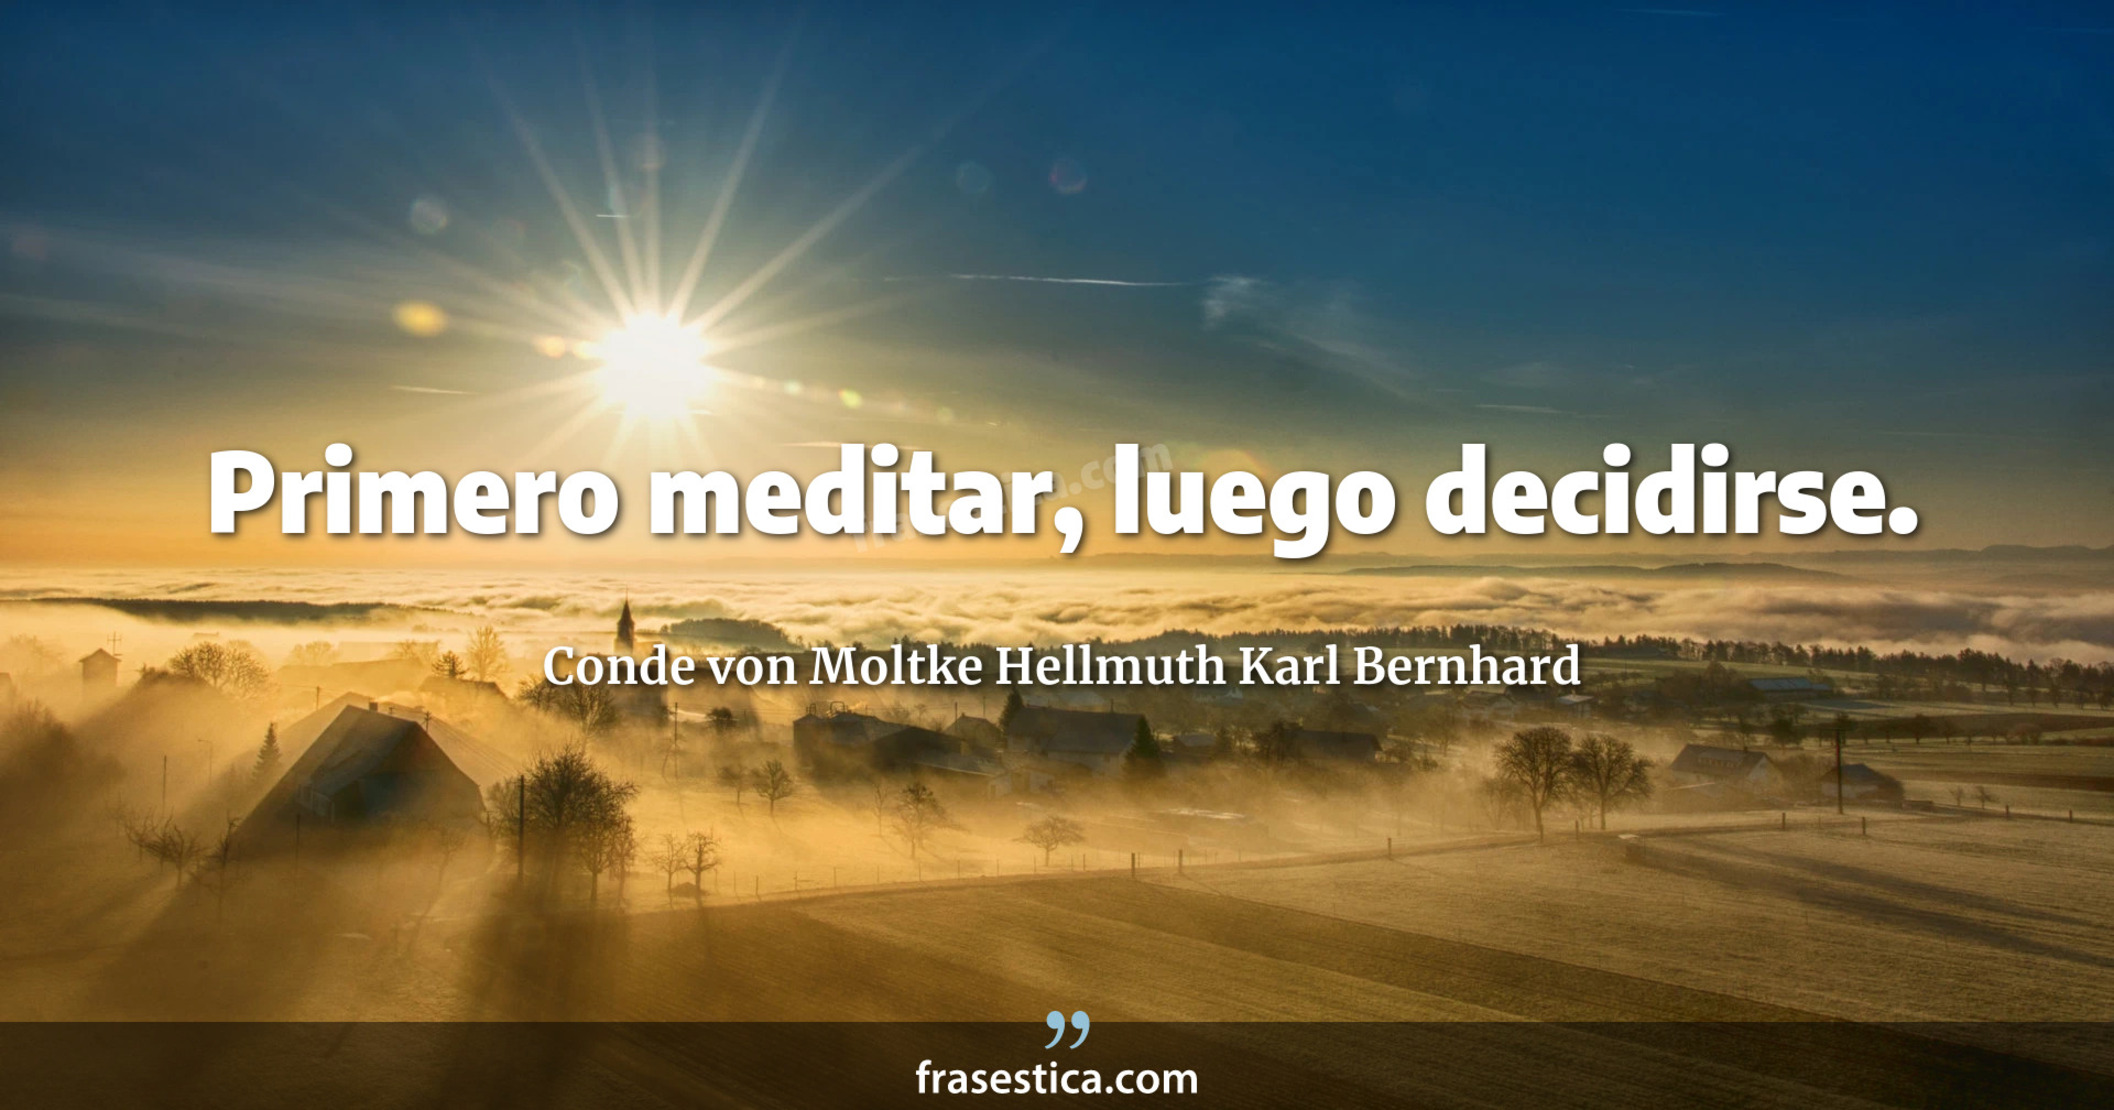 Primero meditar, luego decidirse. - Conde von Moltke Hellmuth Karl Bernhard